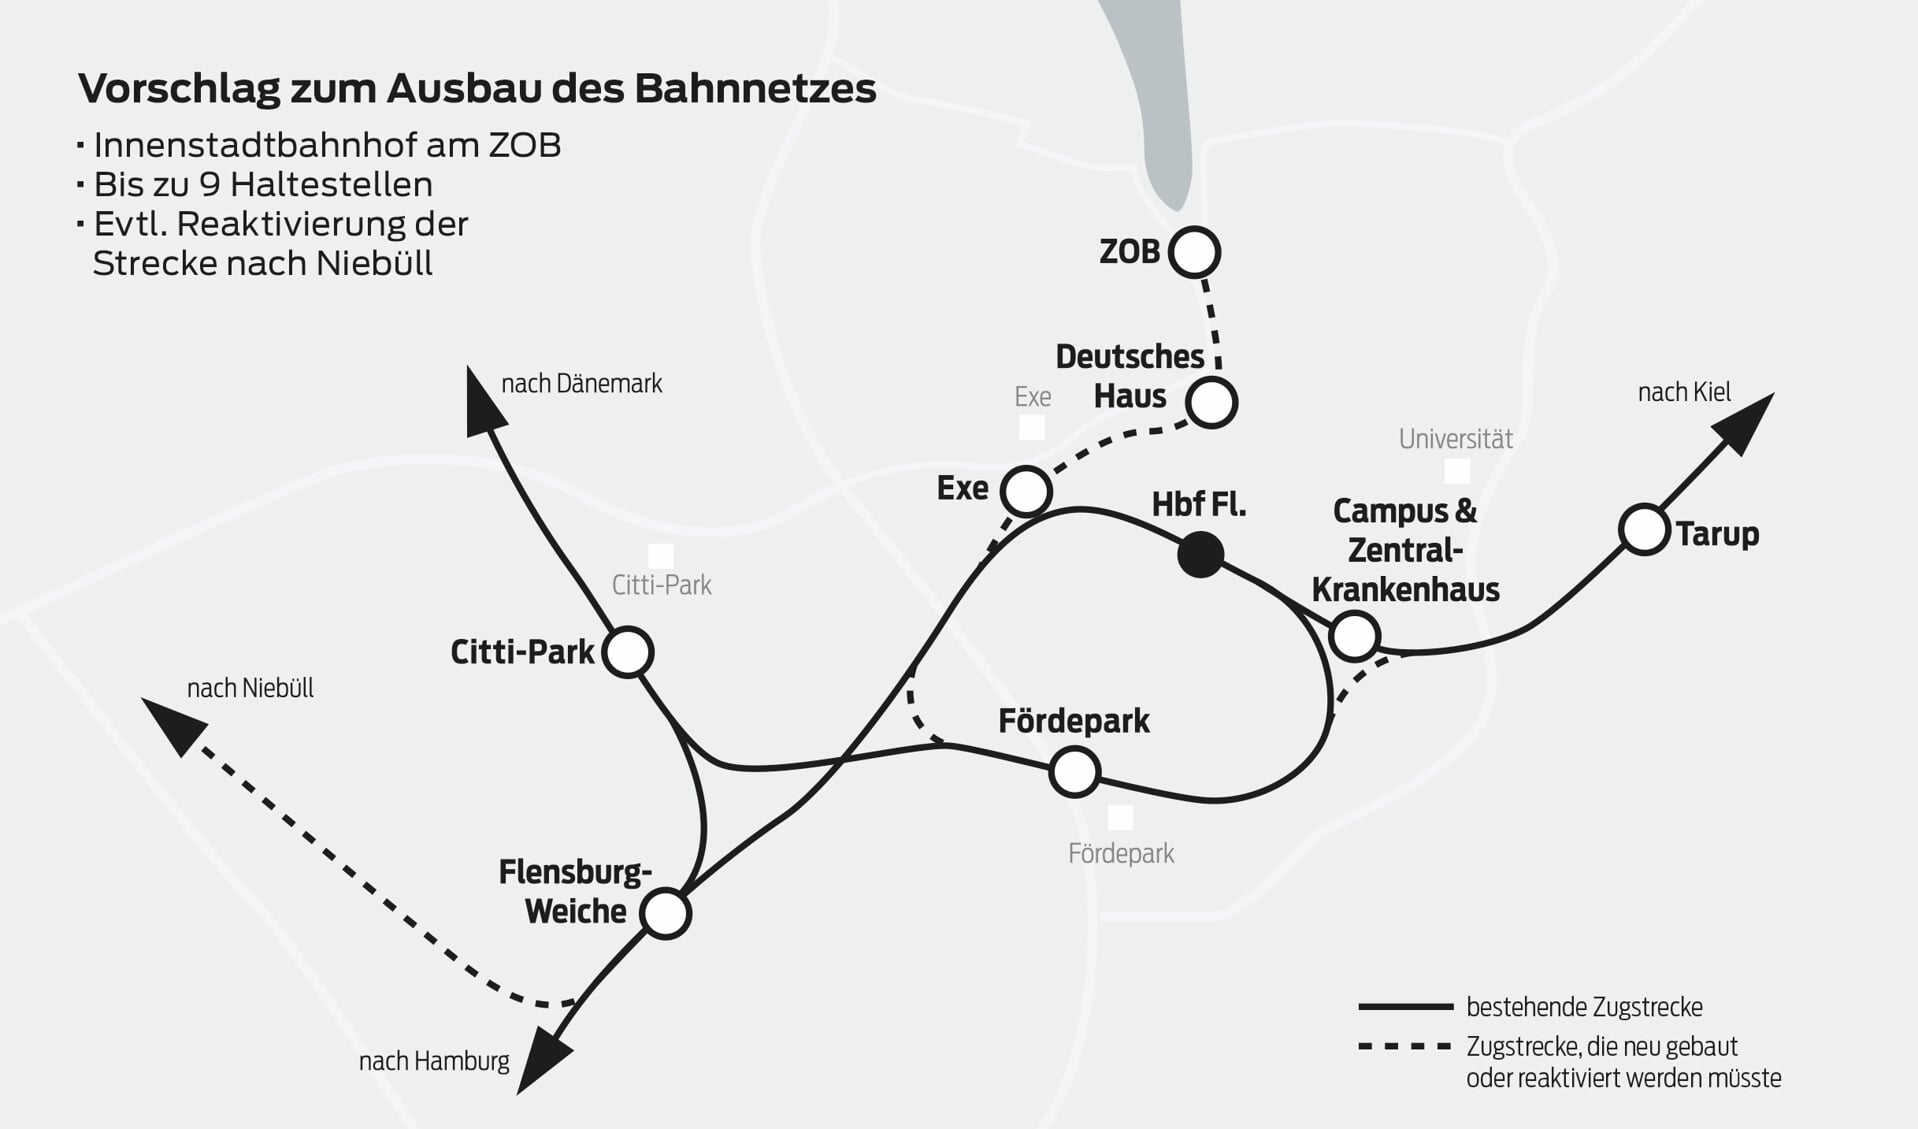 Mit Schienen bis zum ZOB, mehr Haltestellen, einem internationalen Bahnhof in Weiche und einer reaktivierten Strecke nach Niebüll: Für dieses Szenario kämpft unter anderem die IG »Zug zum ZOB«. Grafik: